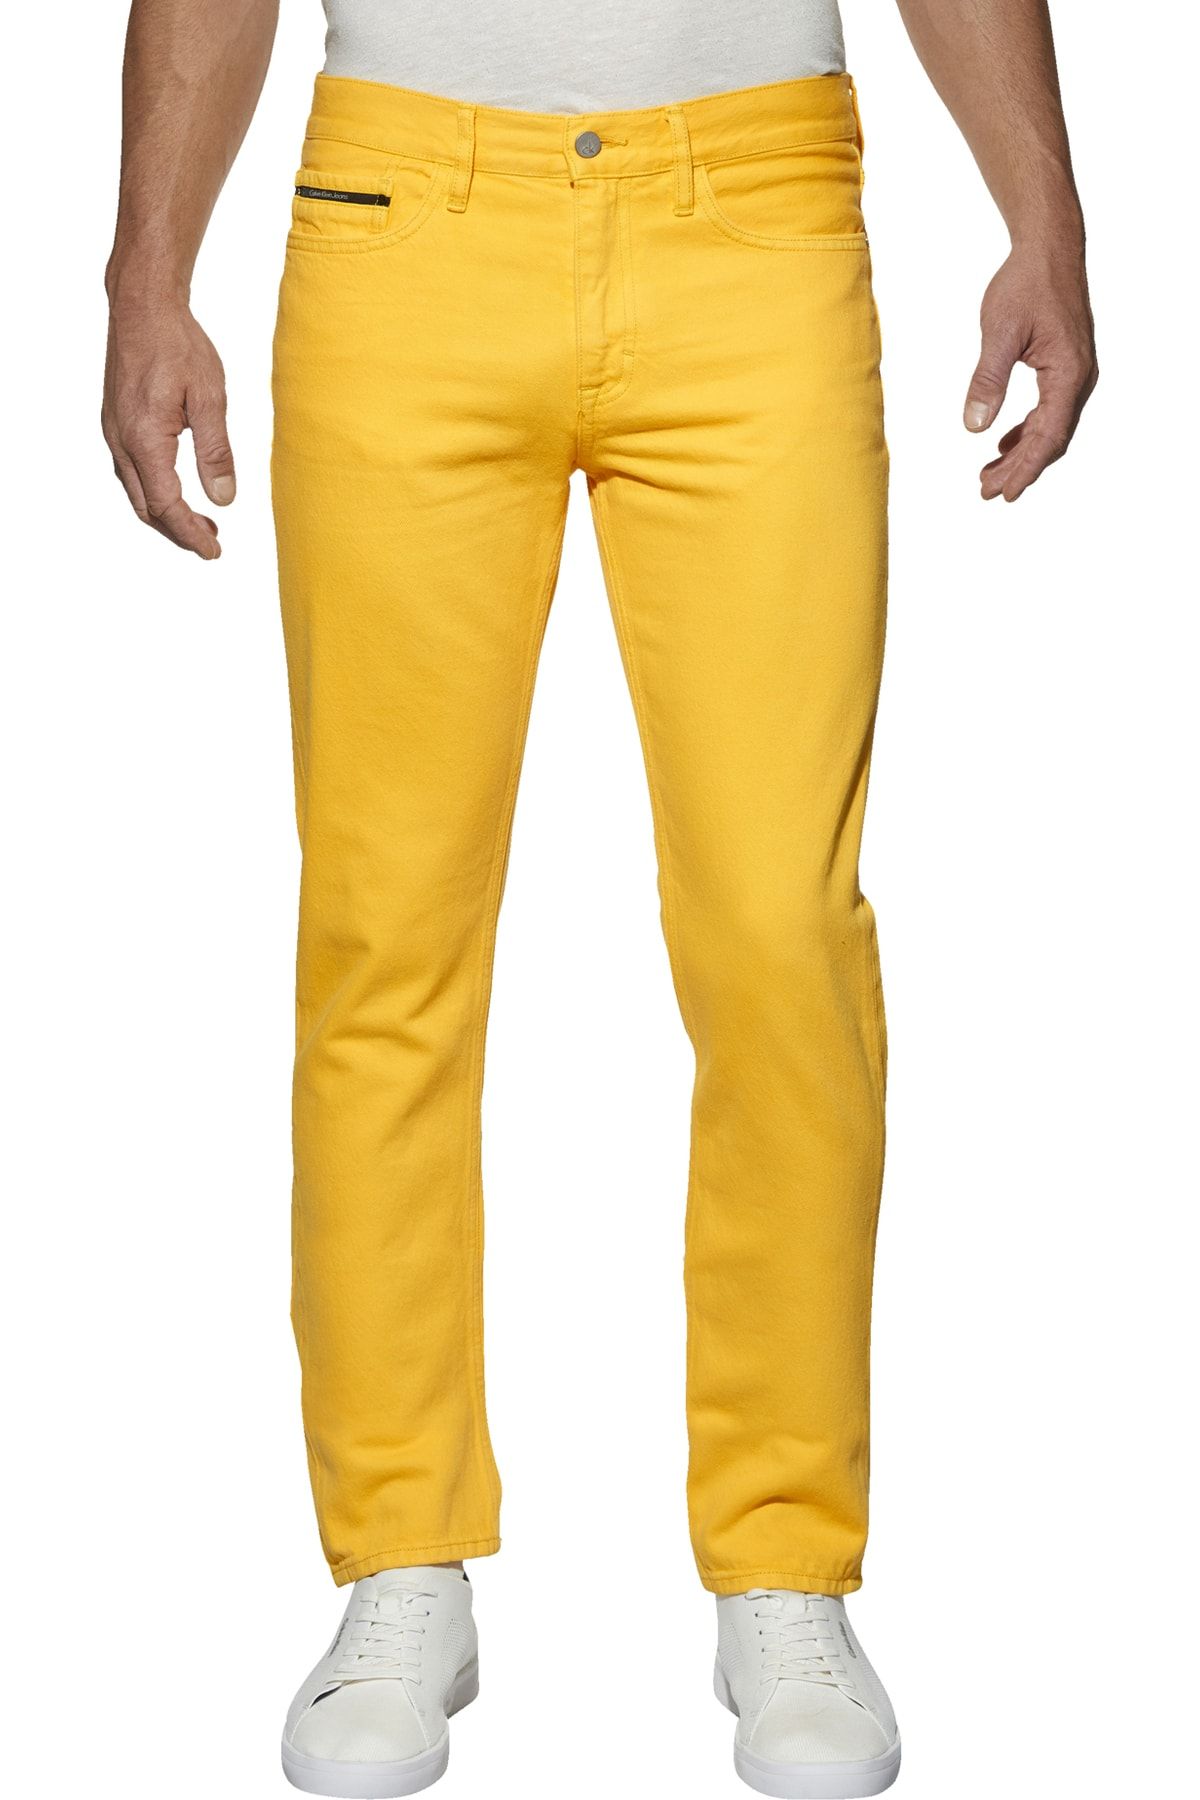 Calvin Klein Sarı Erkek Kot Pantolon J30J307194